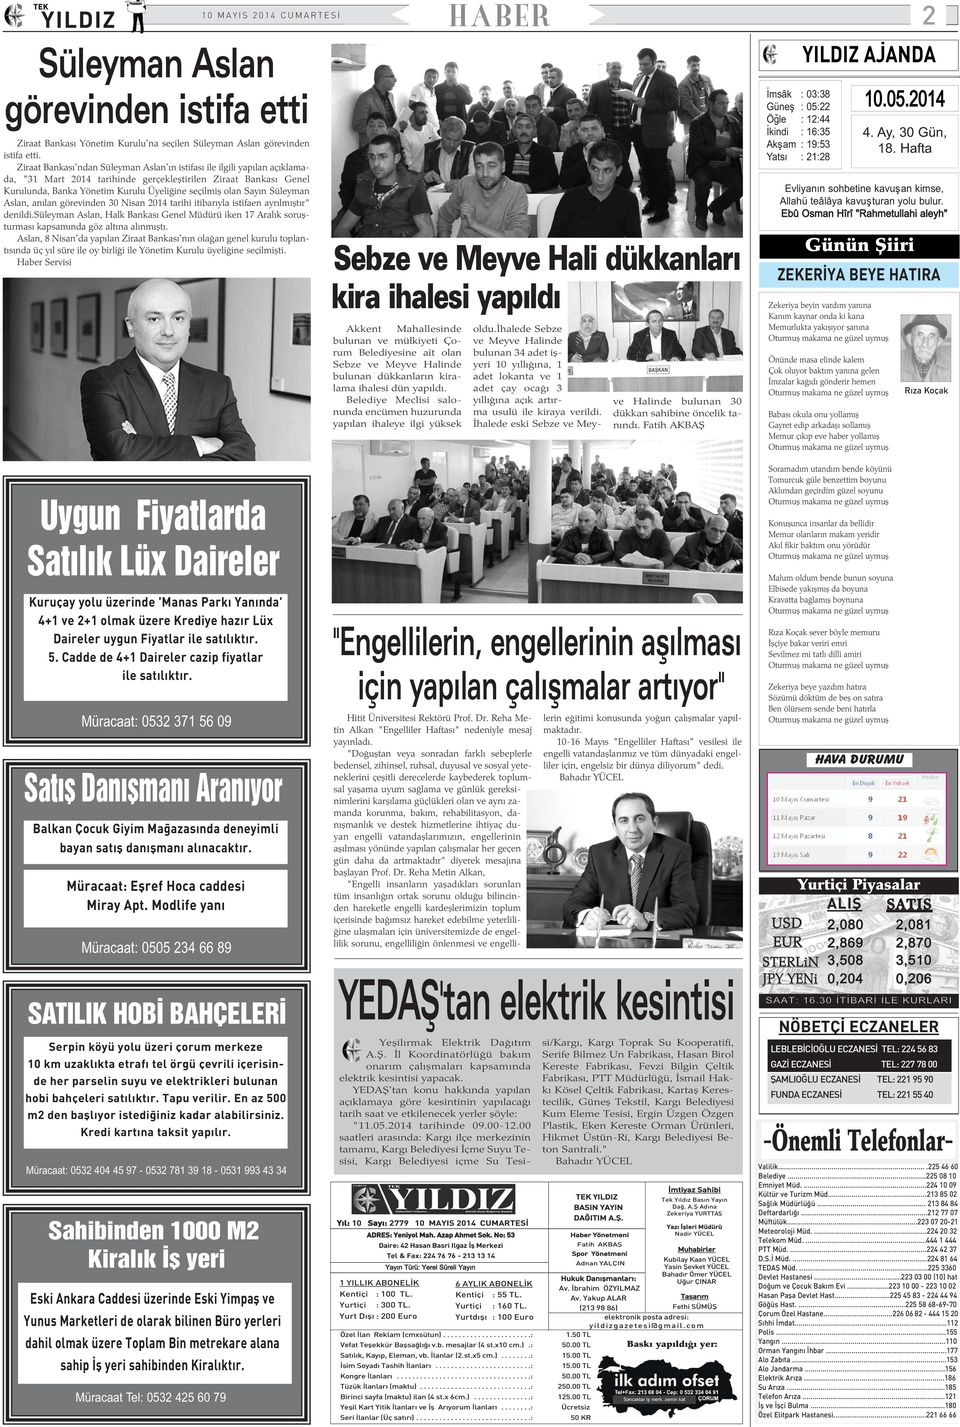 Sayýn Süleyman Aslan, anýlan görevinden 30 Nisan 2014 tarihi itibarýyla istifaen ayrýlmýþtýr" denildi.